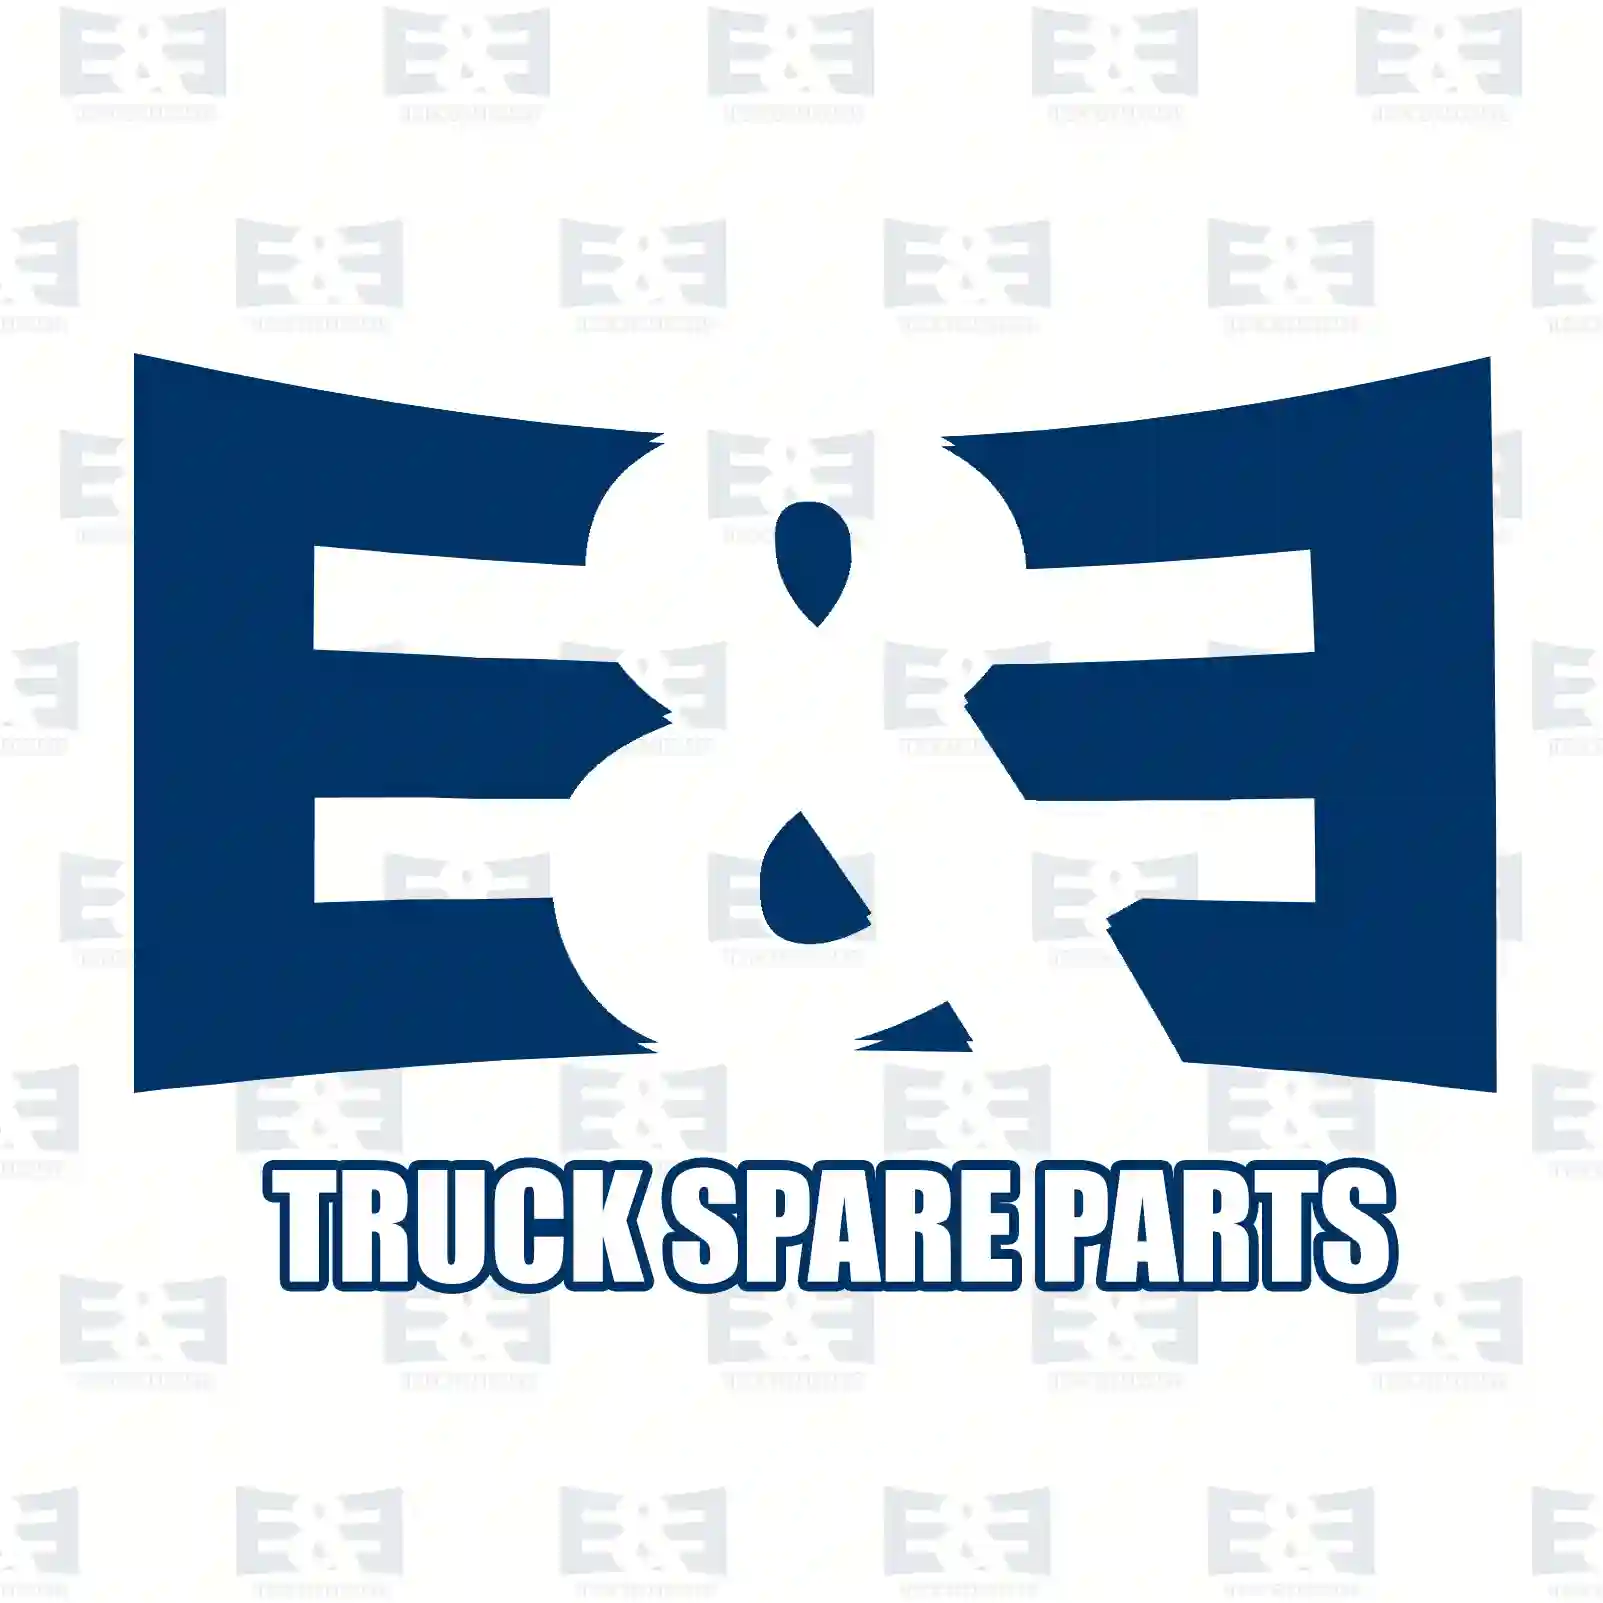 Fuel filter, complete, 2E2286015, 7421088121, 20591266, 21088119, 21088121 ||  2E2286015 E&E Truck Spare Parts | Truck Spare Parts, Auotomotive Spare Parts Fuel filter, complete, 2E2286015, 7421088121, 20591266, 21088119, 21088121 ||  2E2286015 E&E Truck Spare Parts | Truck Spare Parts, Auotomotive Spare Parts